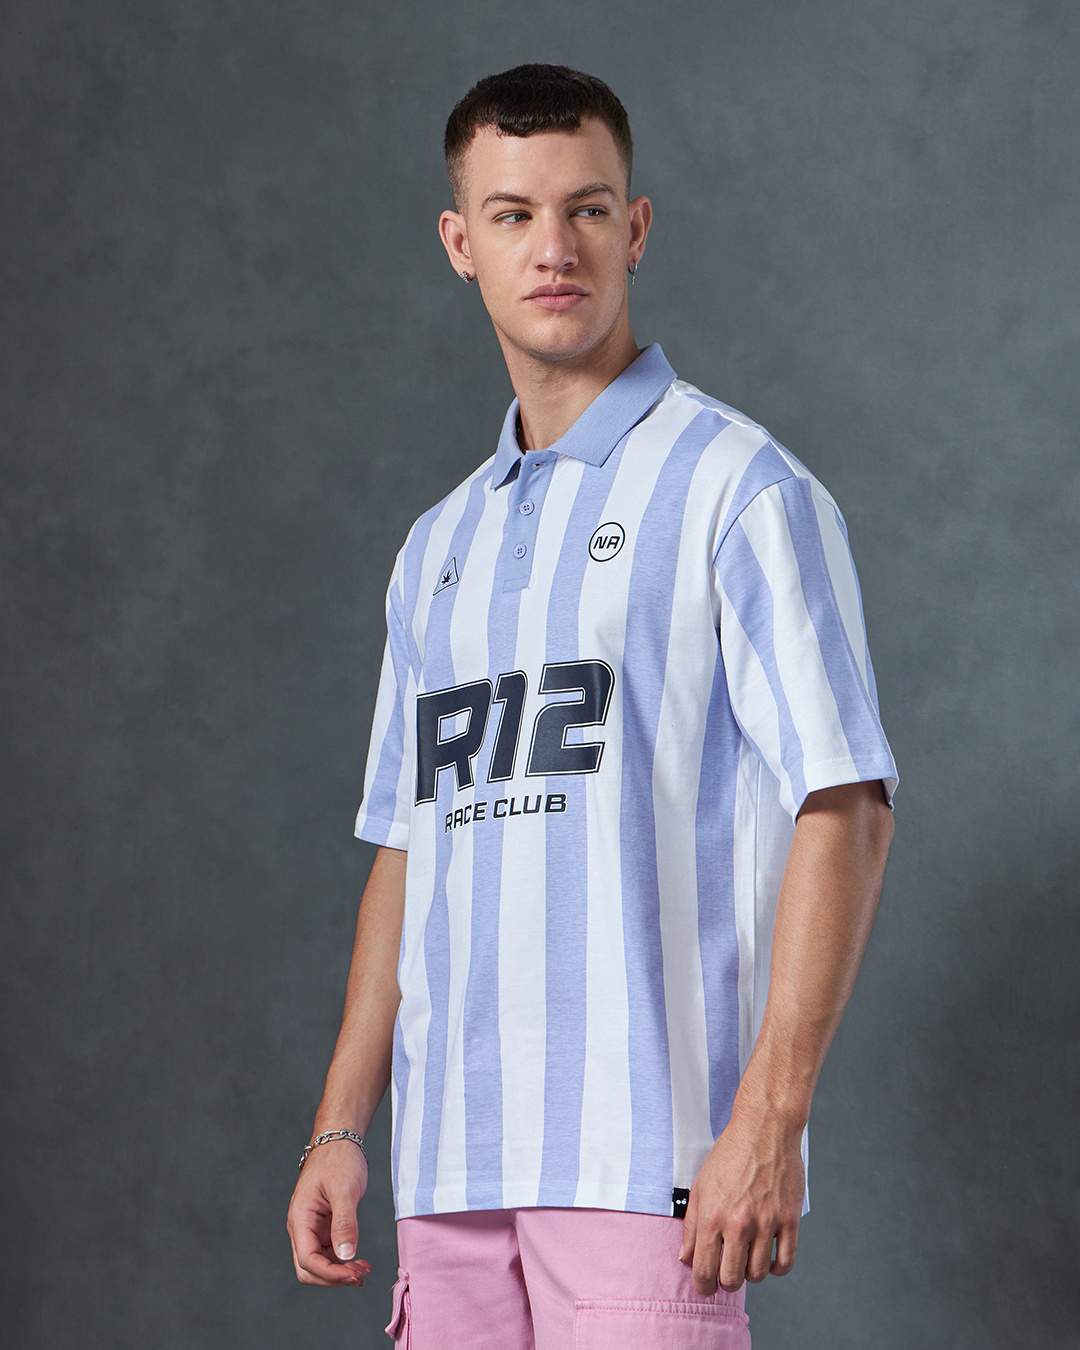 Shop Men's White & Blue R12 Race Club Striped Polo T-shirt-Back